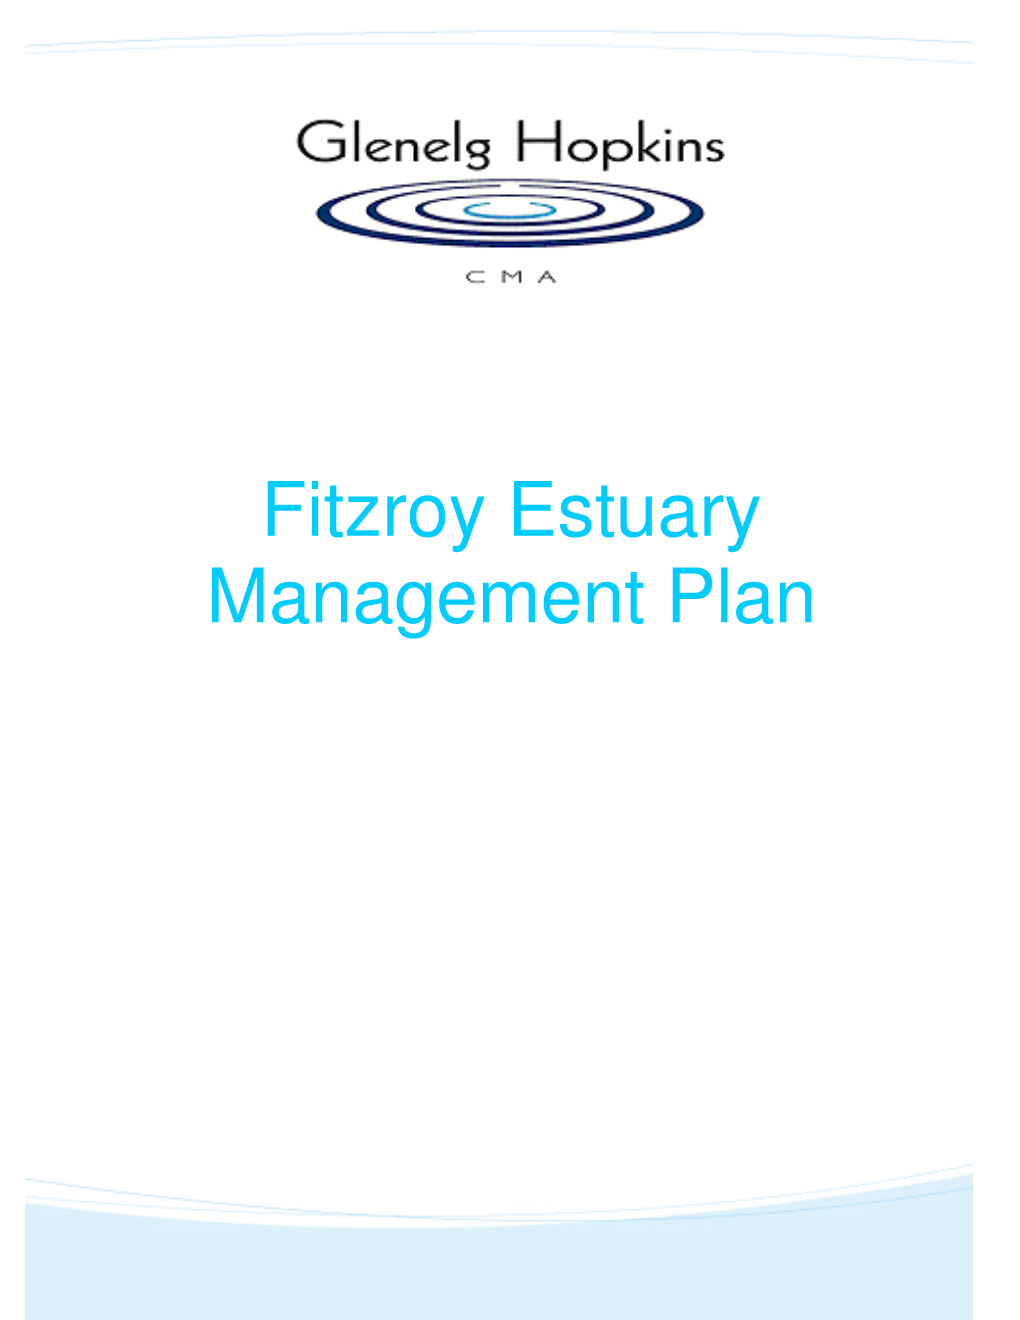 Fitzroy Estuary Management Plan